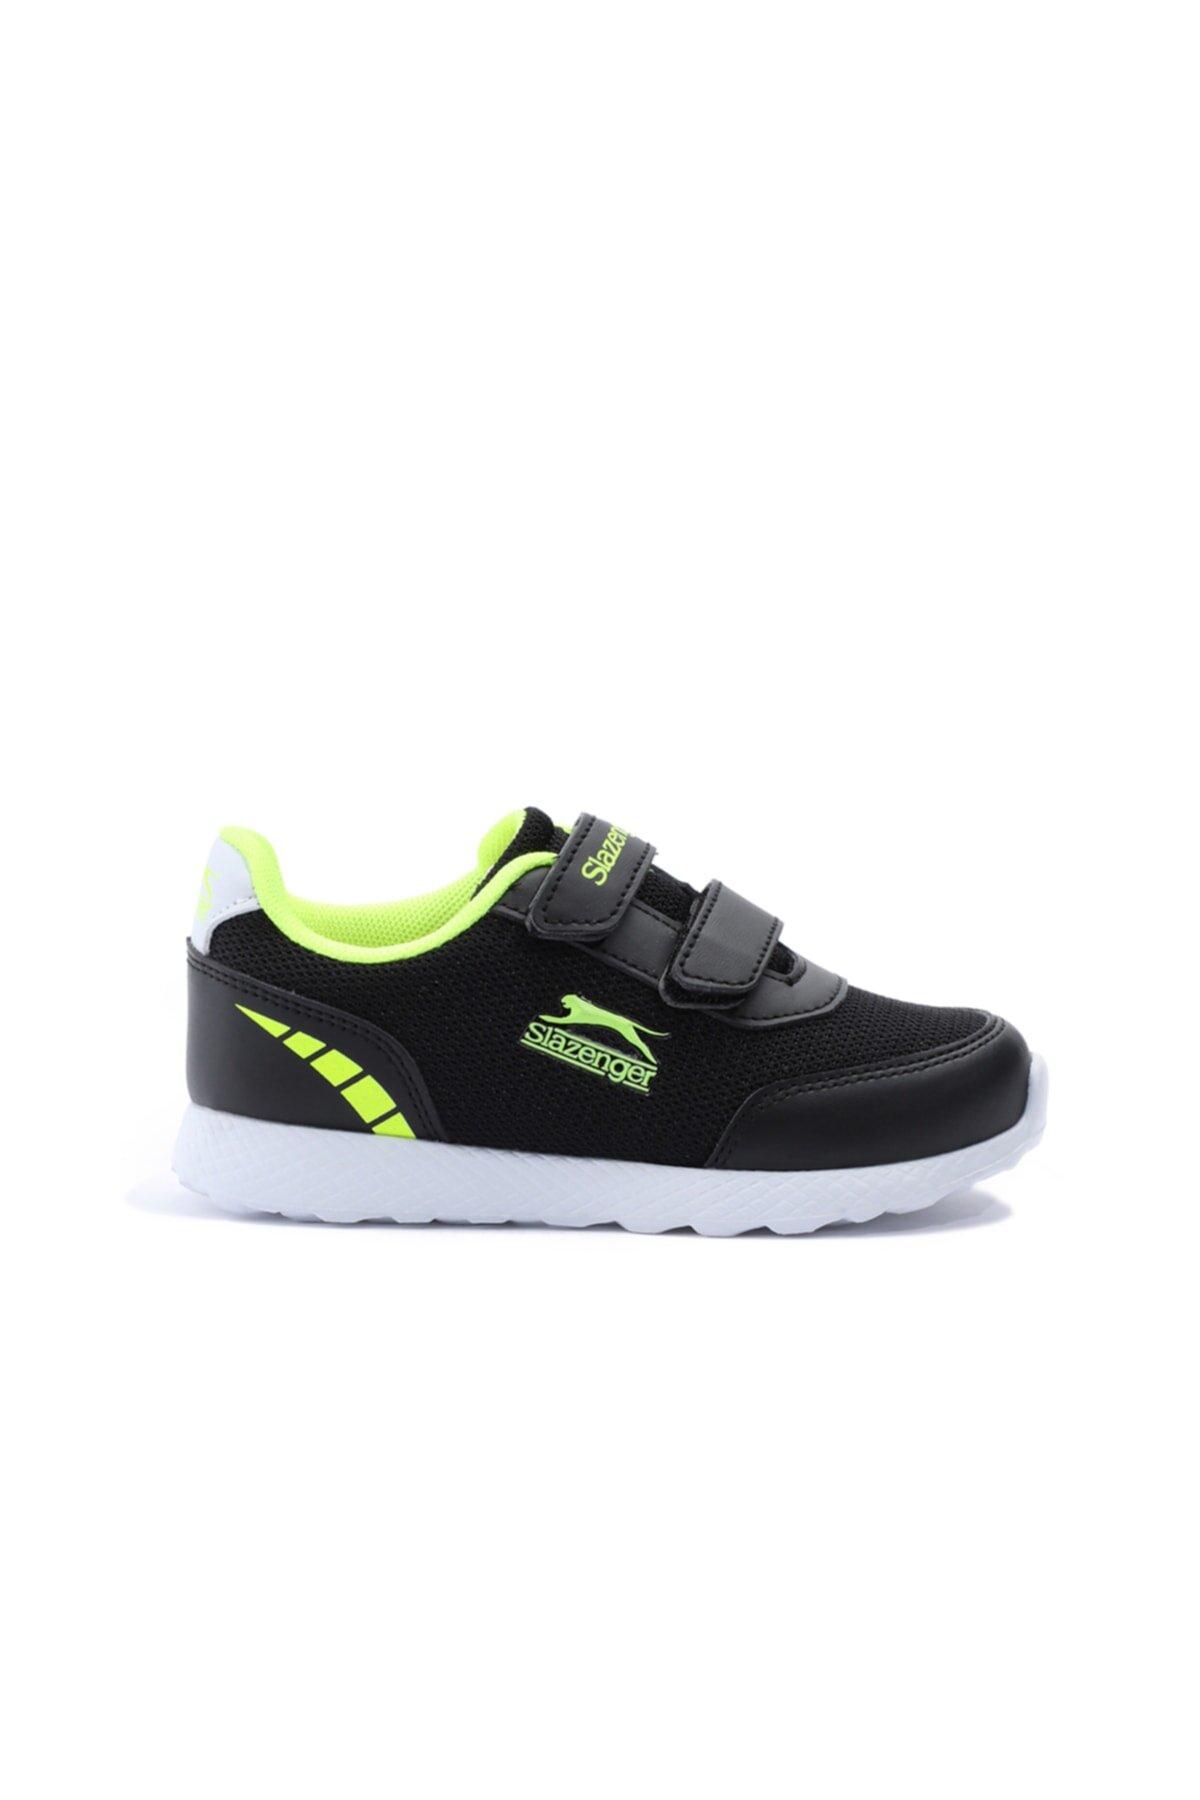 Slazenger Faına Sneaker Erkek Çocuk Ayakkabı Siyah